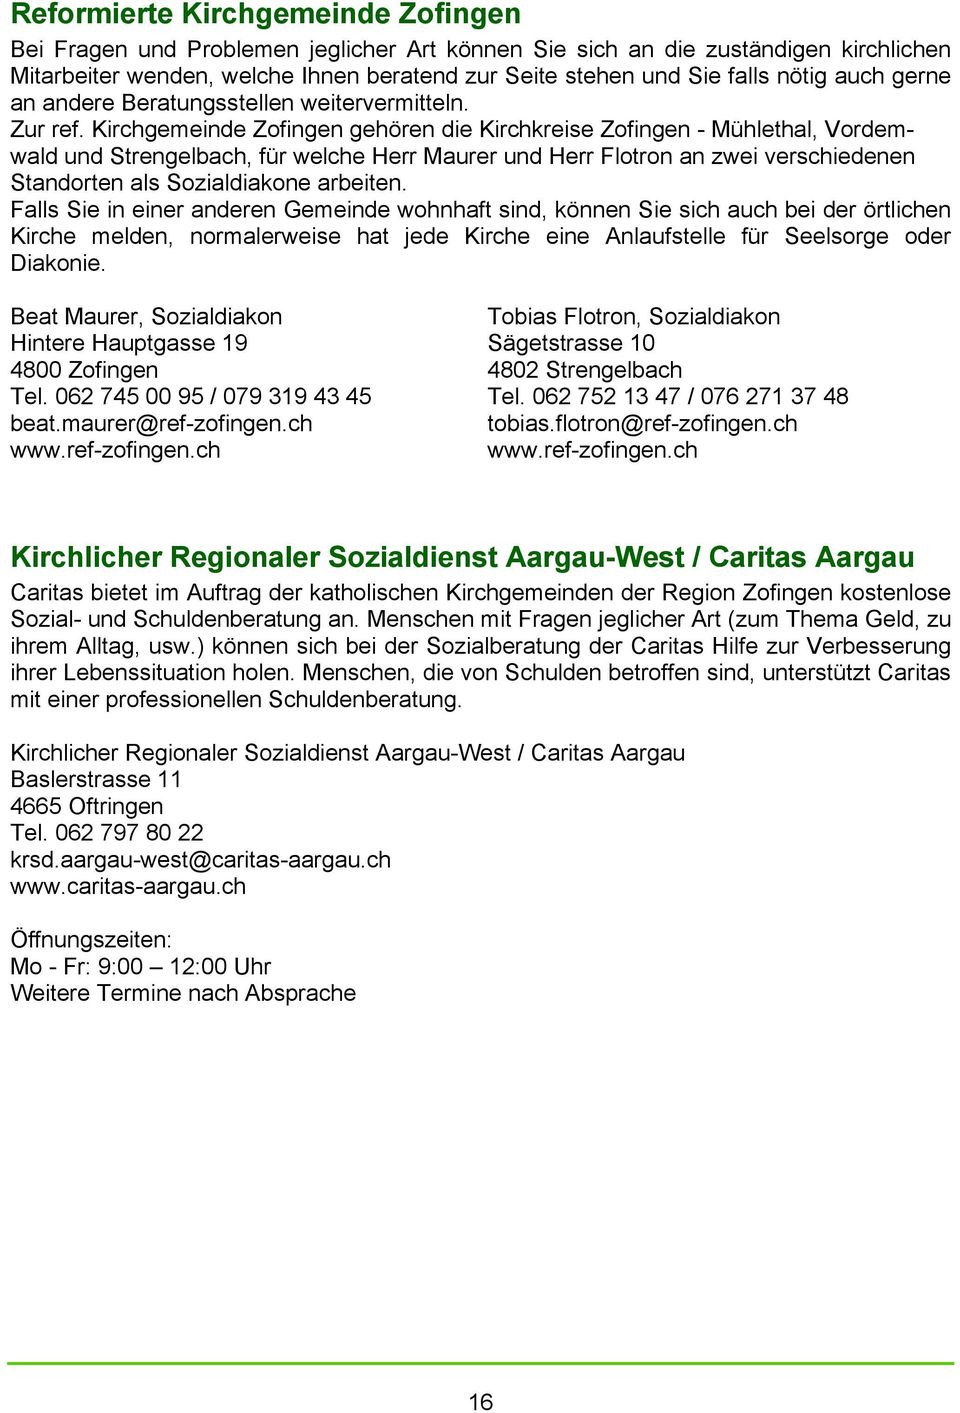 Kirchgemeinde Zofingen gehören die Kirchkreise Zofingen - Mühlethal, Vordemwald und Strengelbach, für welche Herr Maurer und Herr Flotron an zwei verschiedenen Standorten als Sozialdiakone arbeiten.